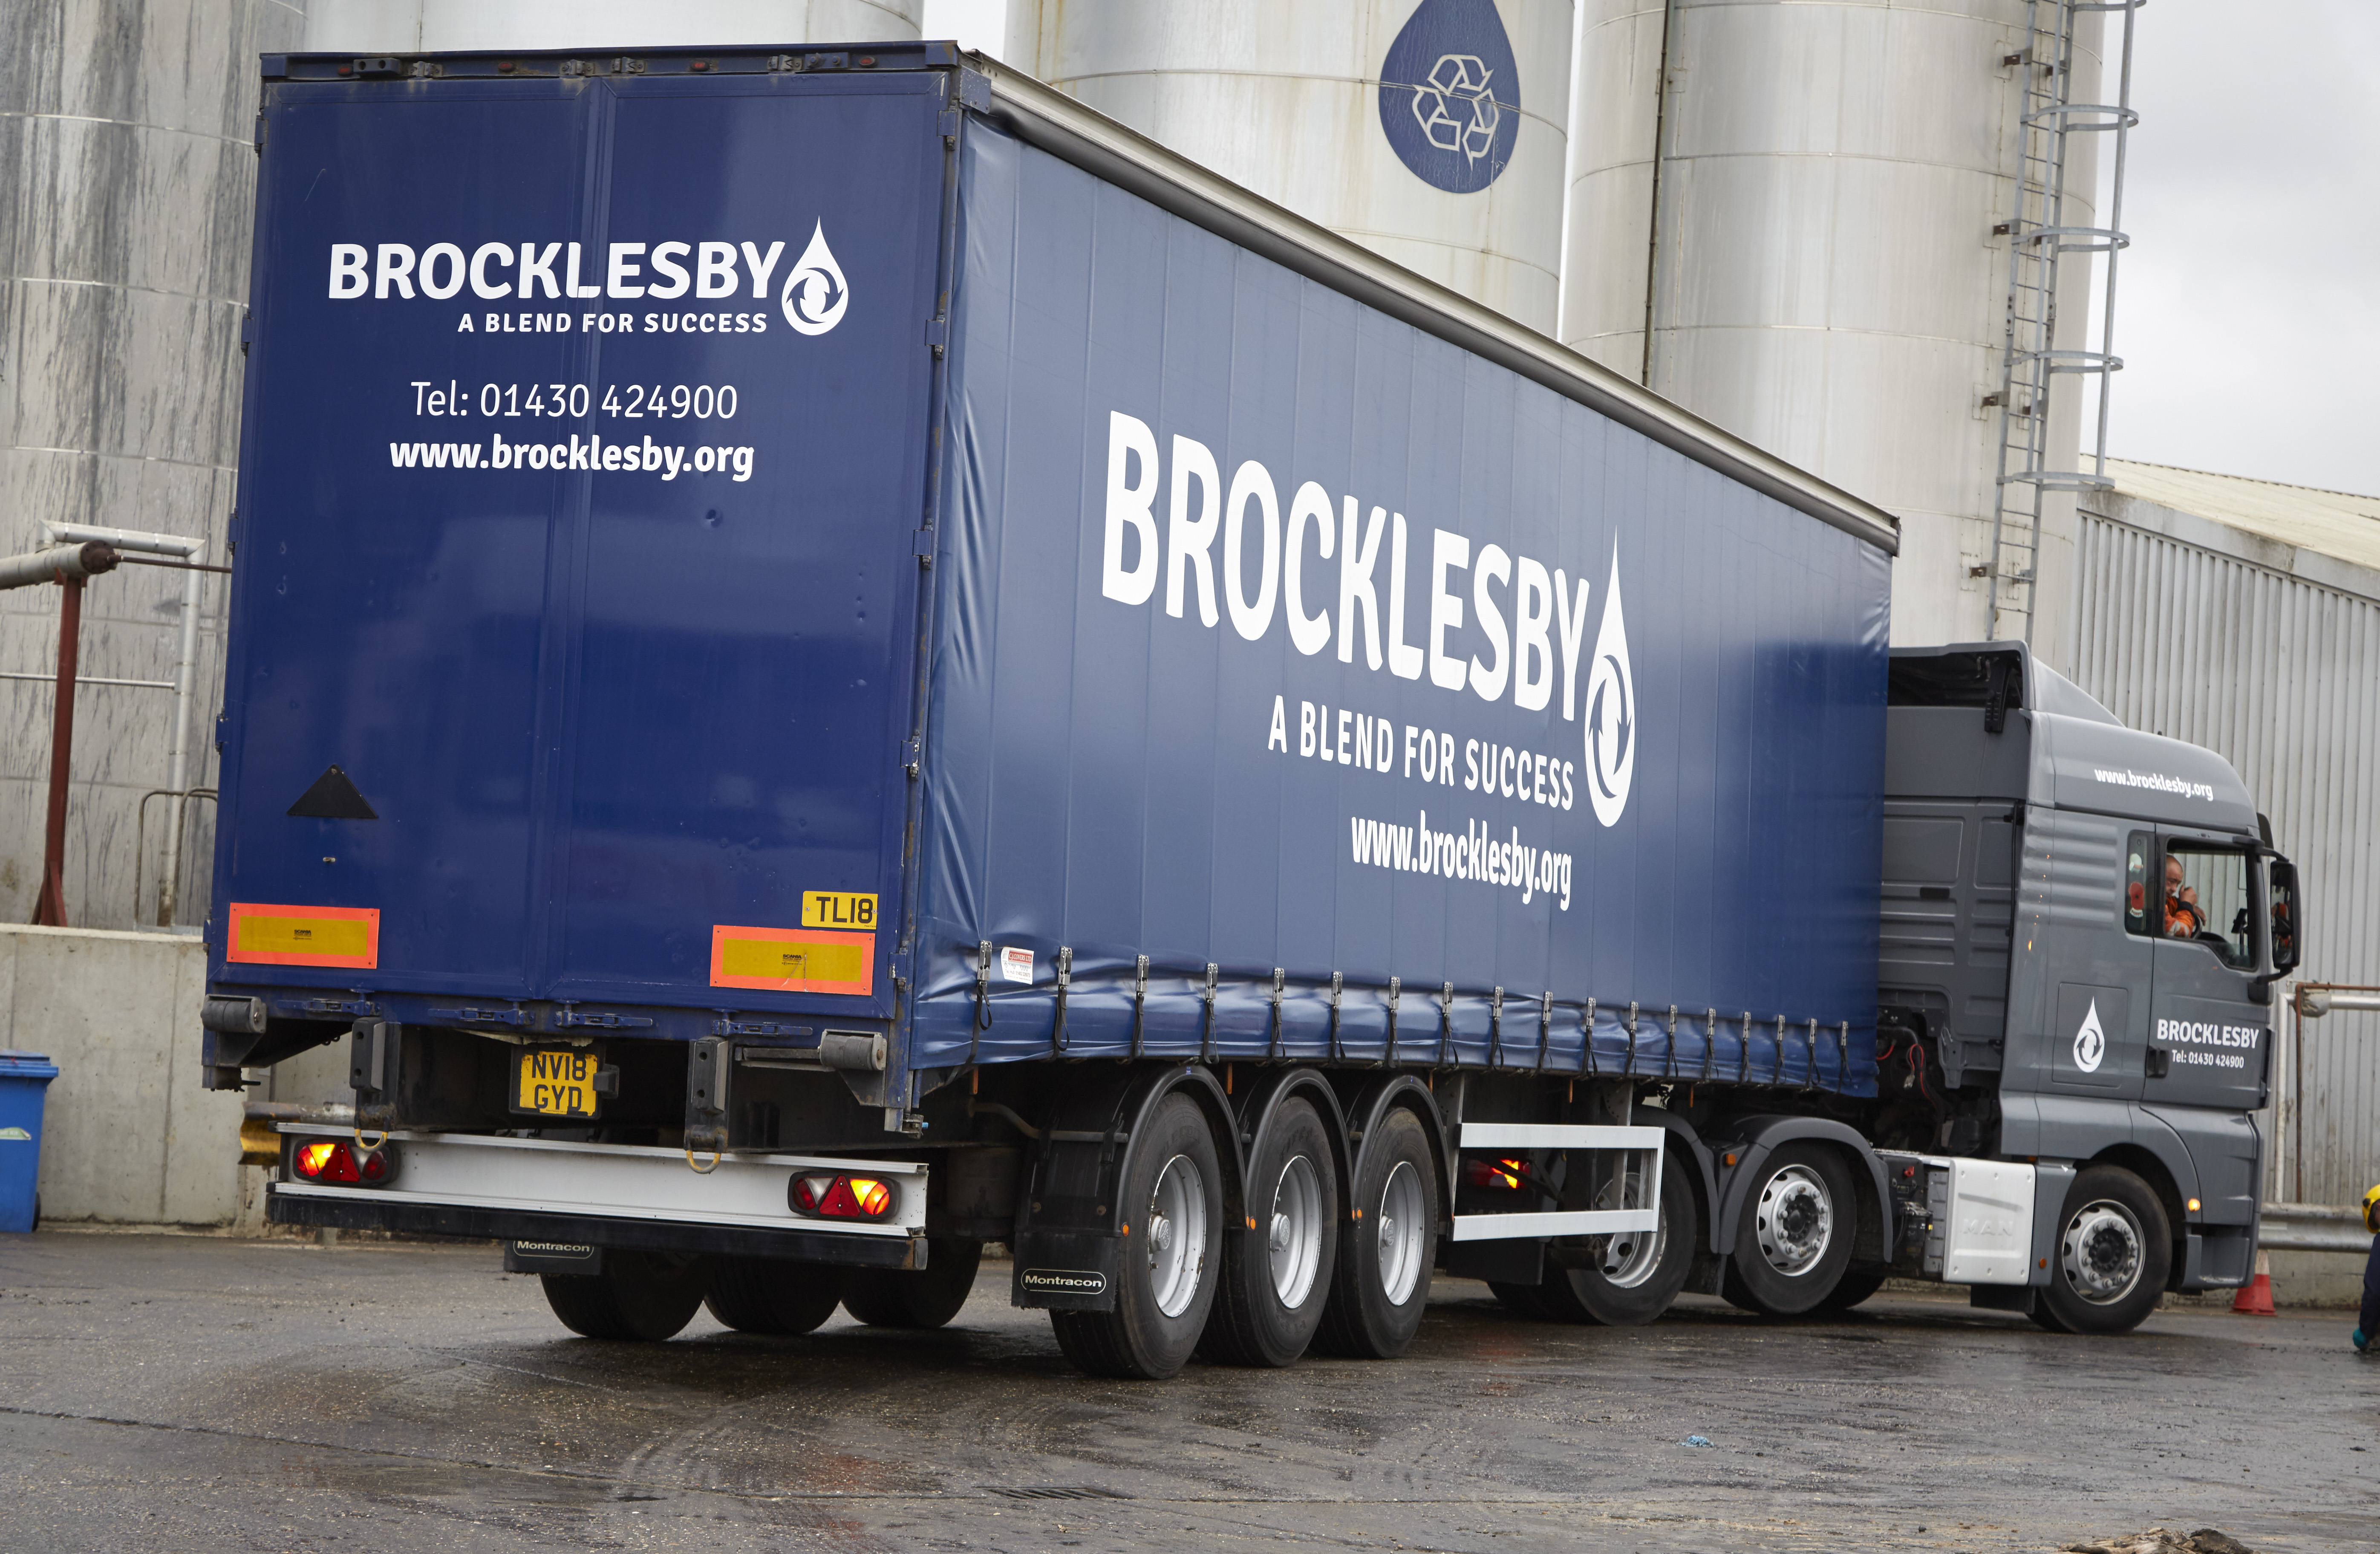 Brockelsby truck